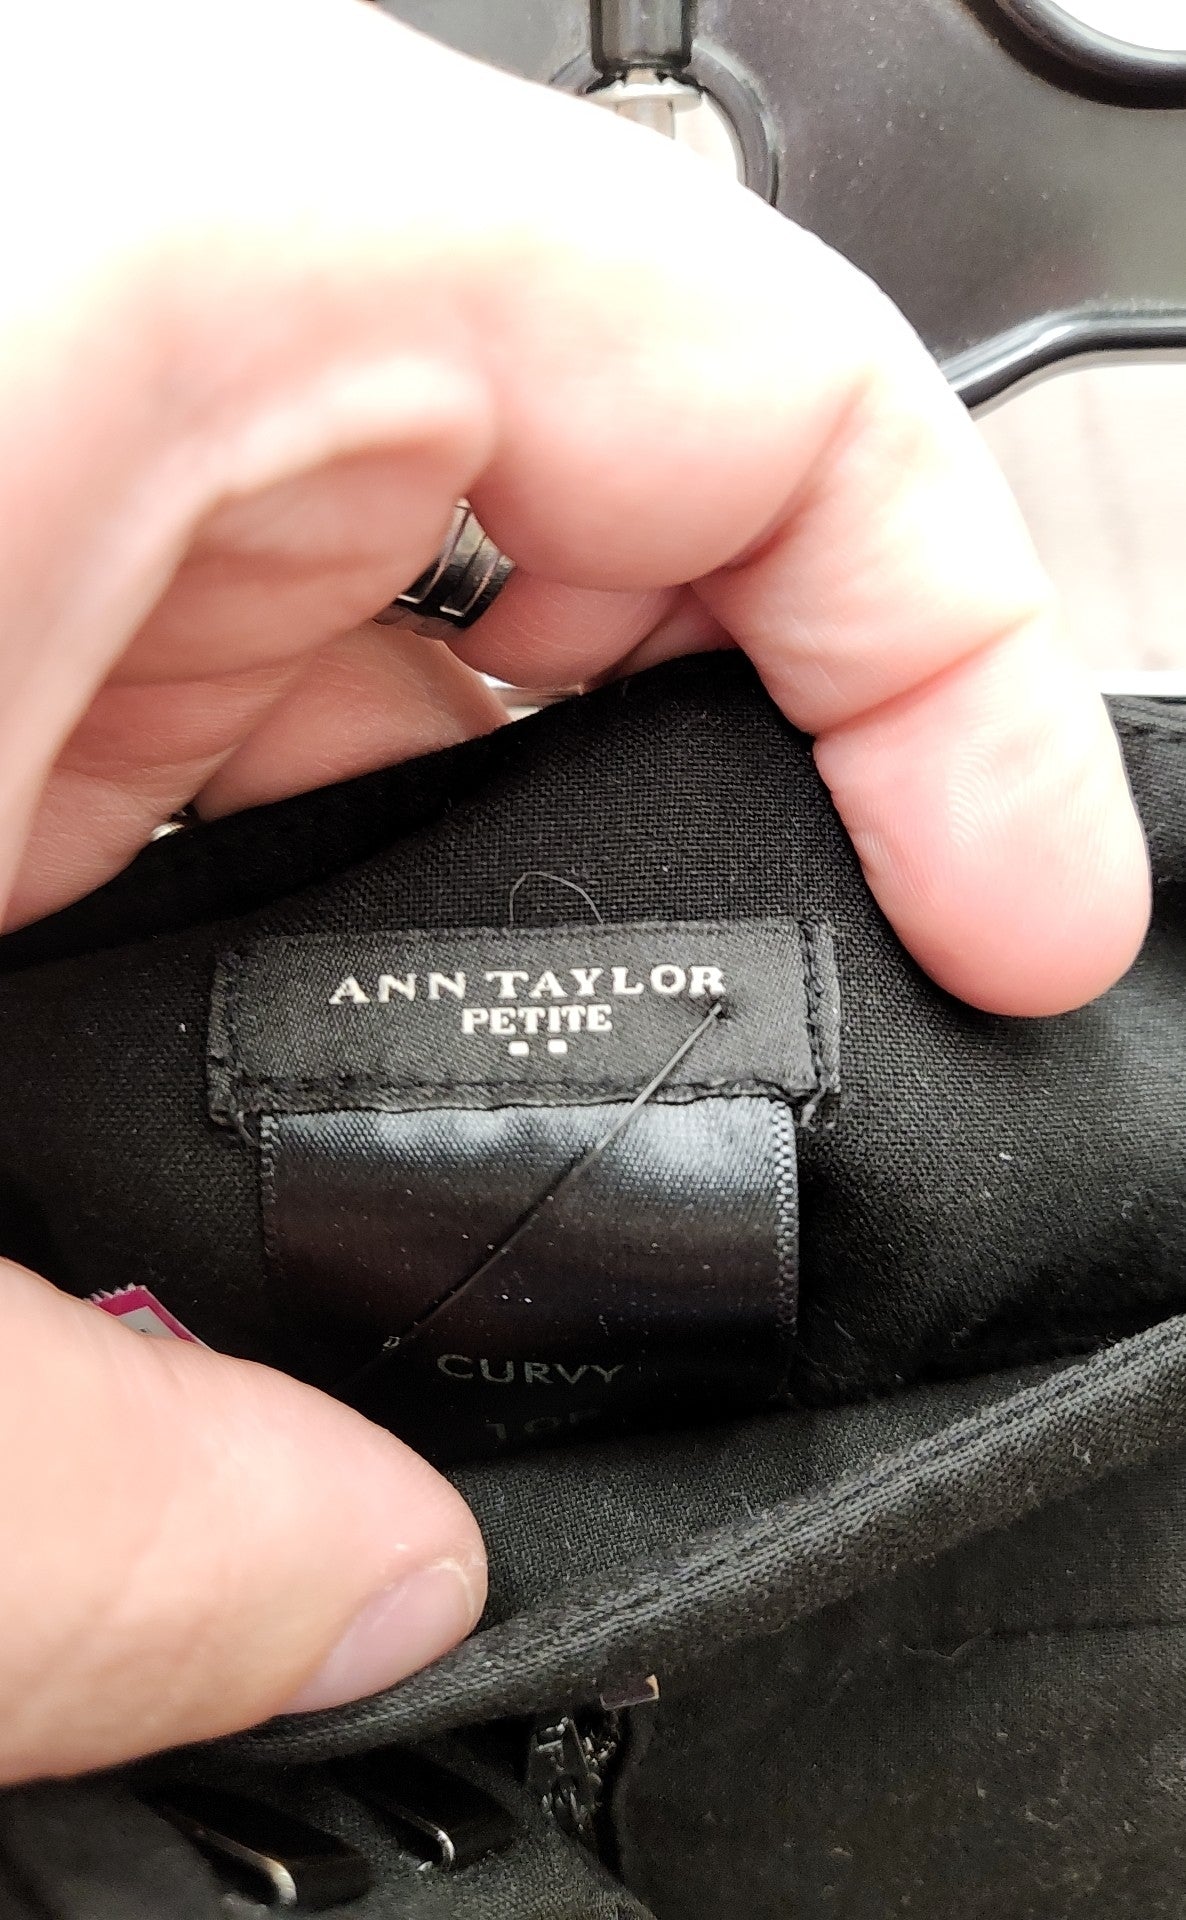 Ann Taylor Women's Size 10 Petite Curvy Black Pants